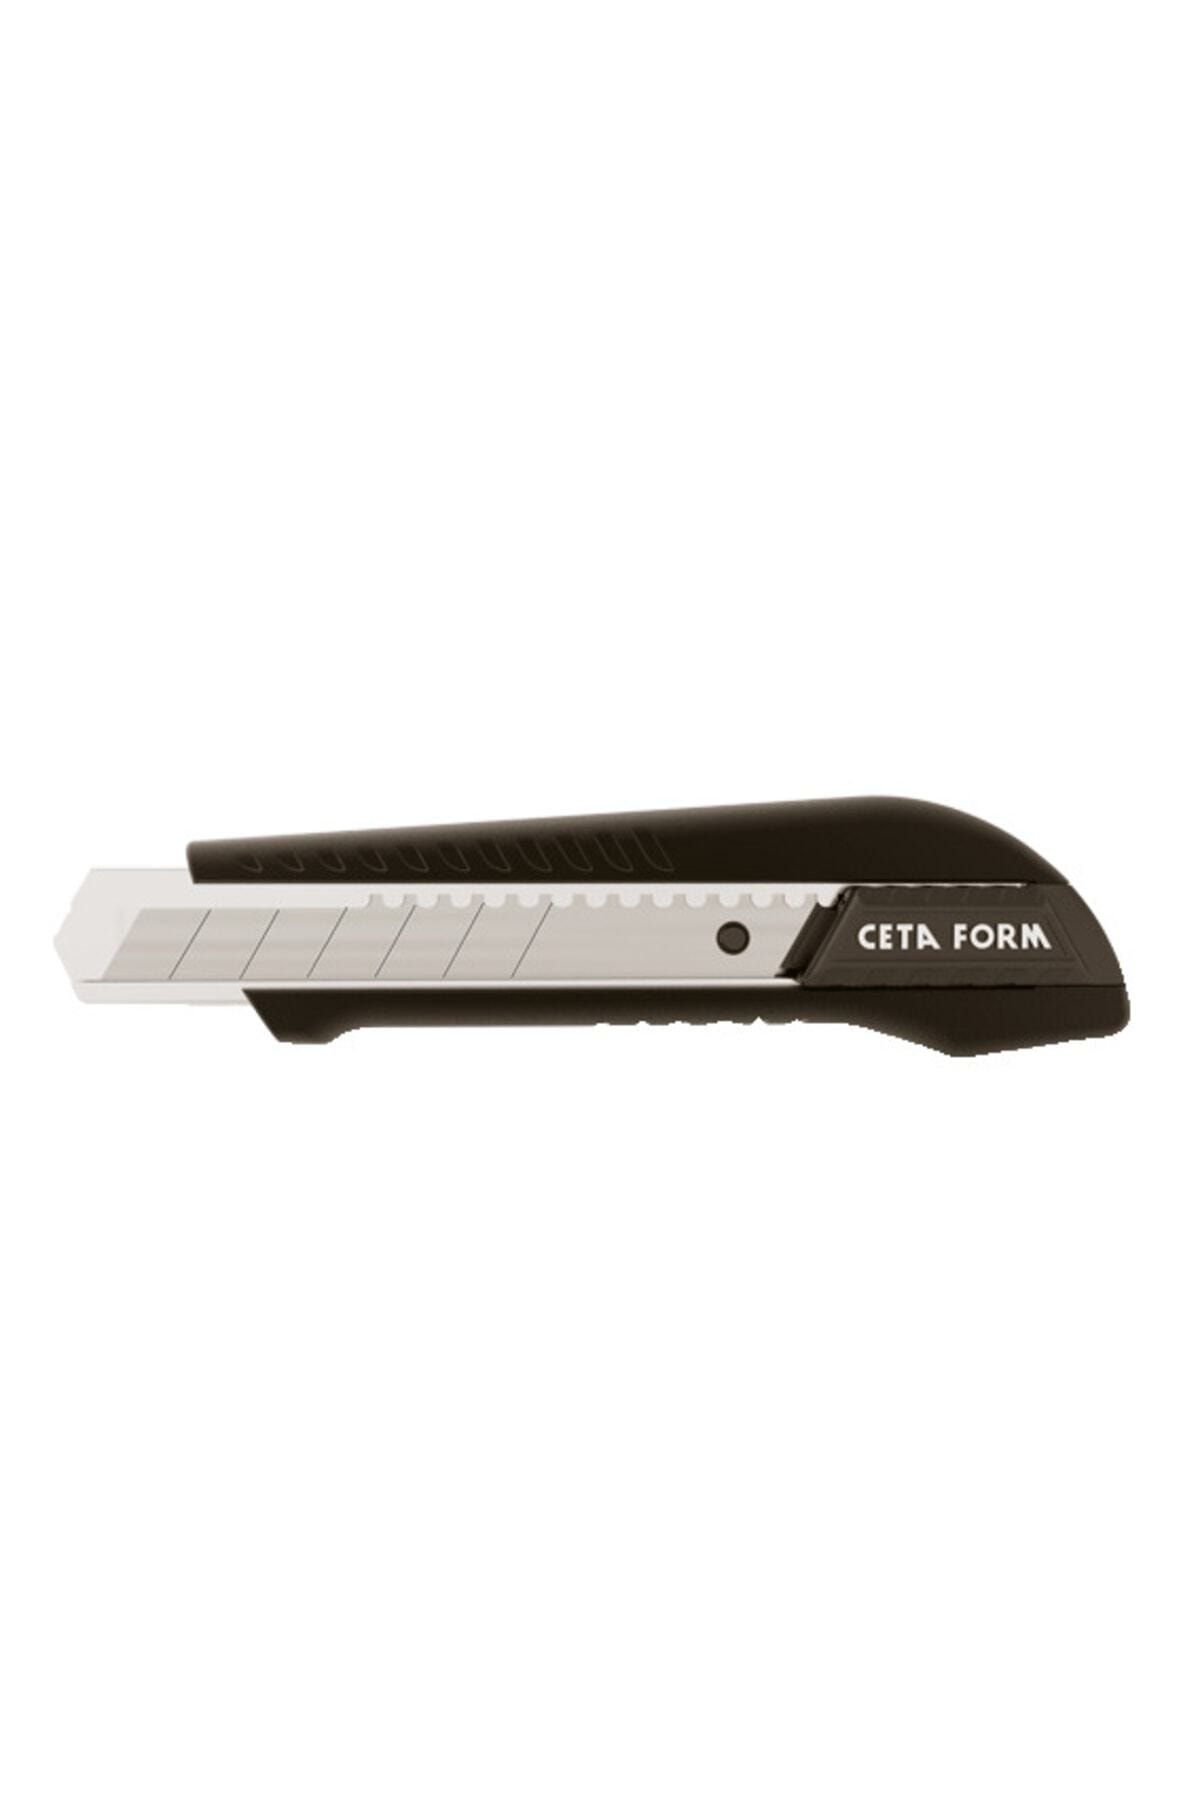 CETA FORM J45cpm C-pro Maket Bıçağı Metal Gövde -18 Mm